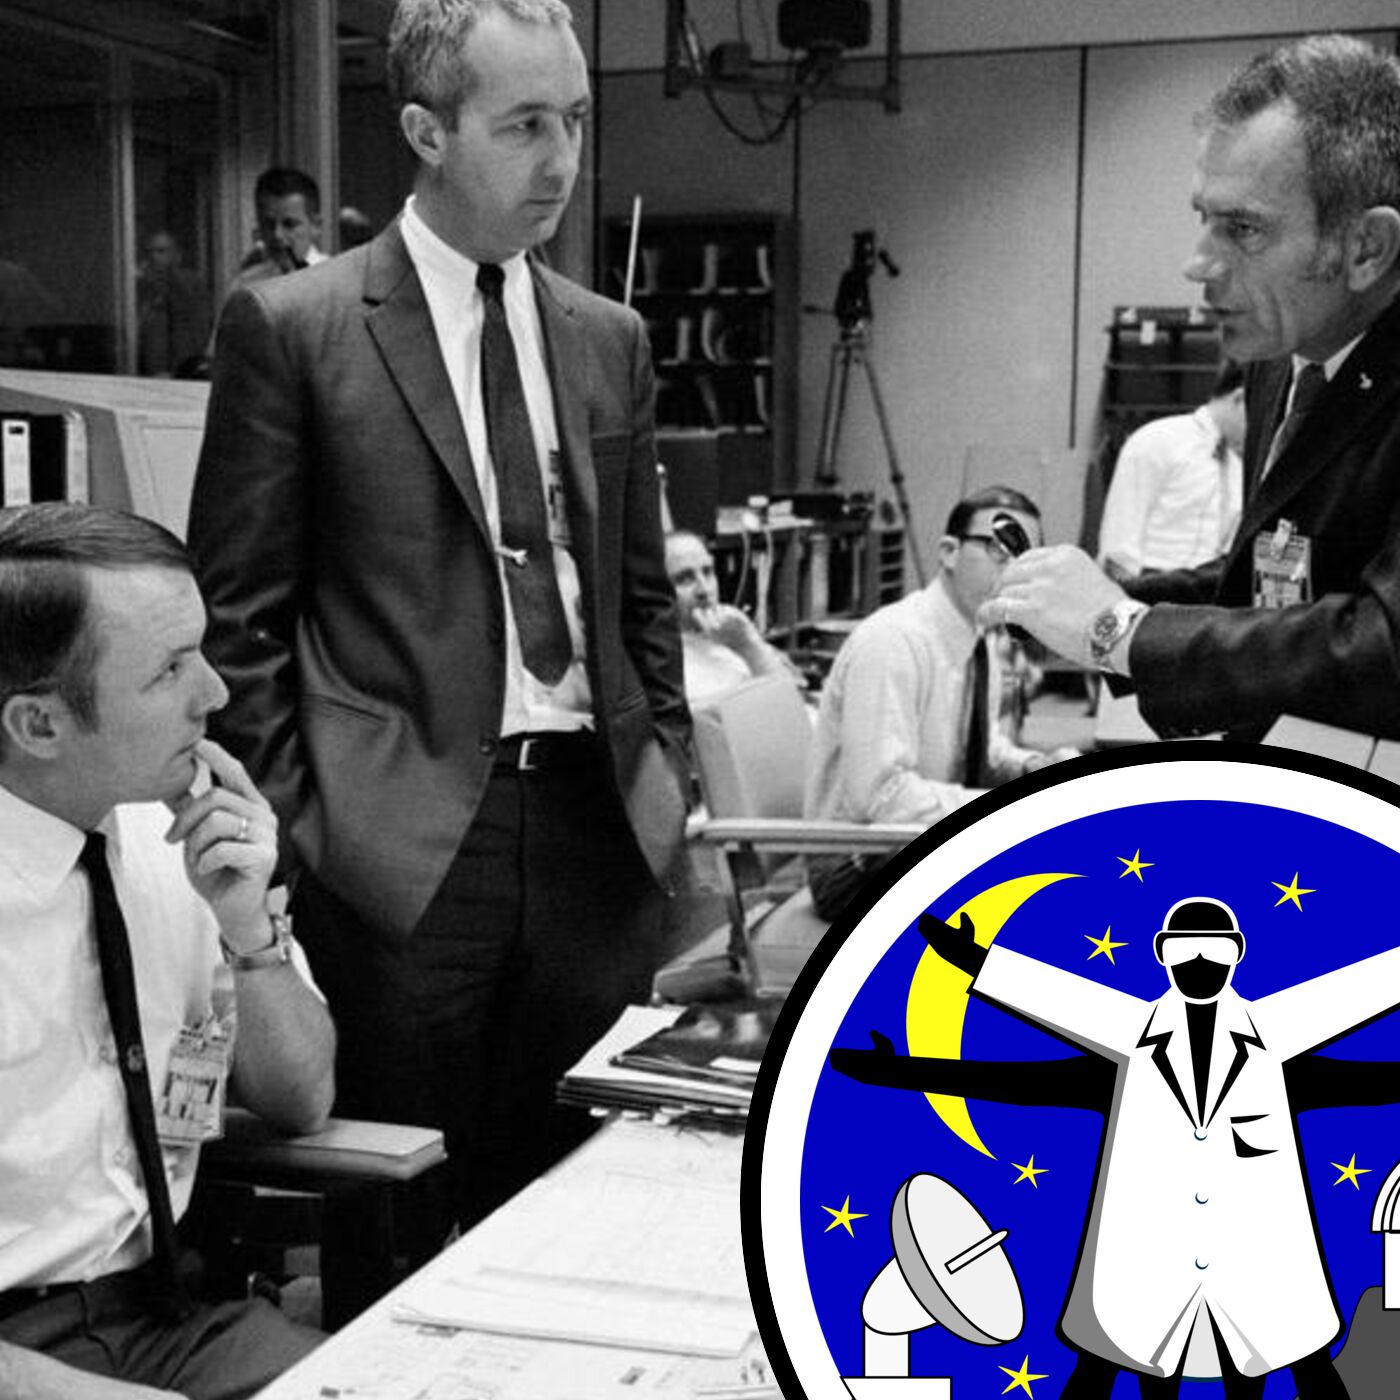 Moonwalkers, and NASA flight director Gerry Griffin